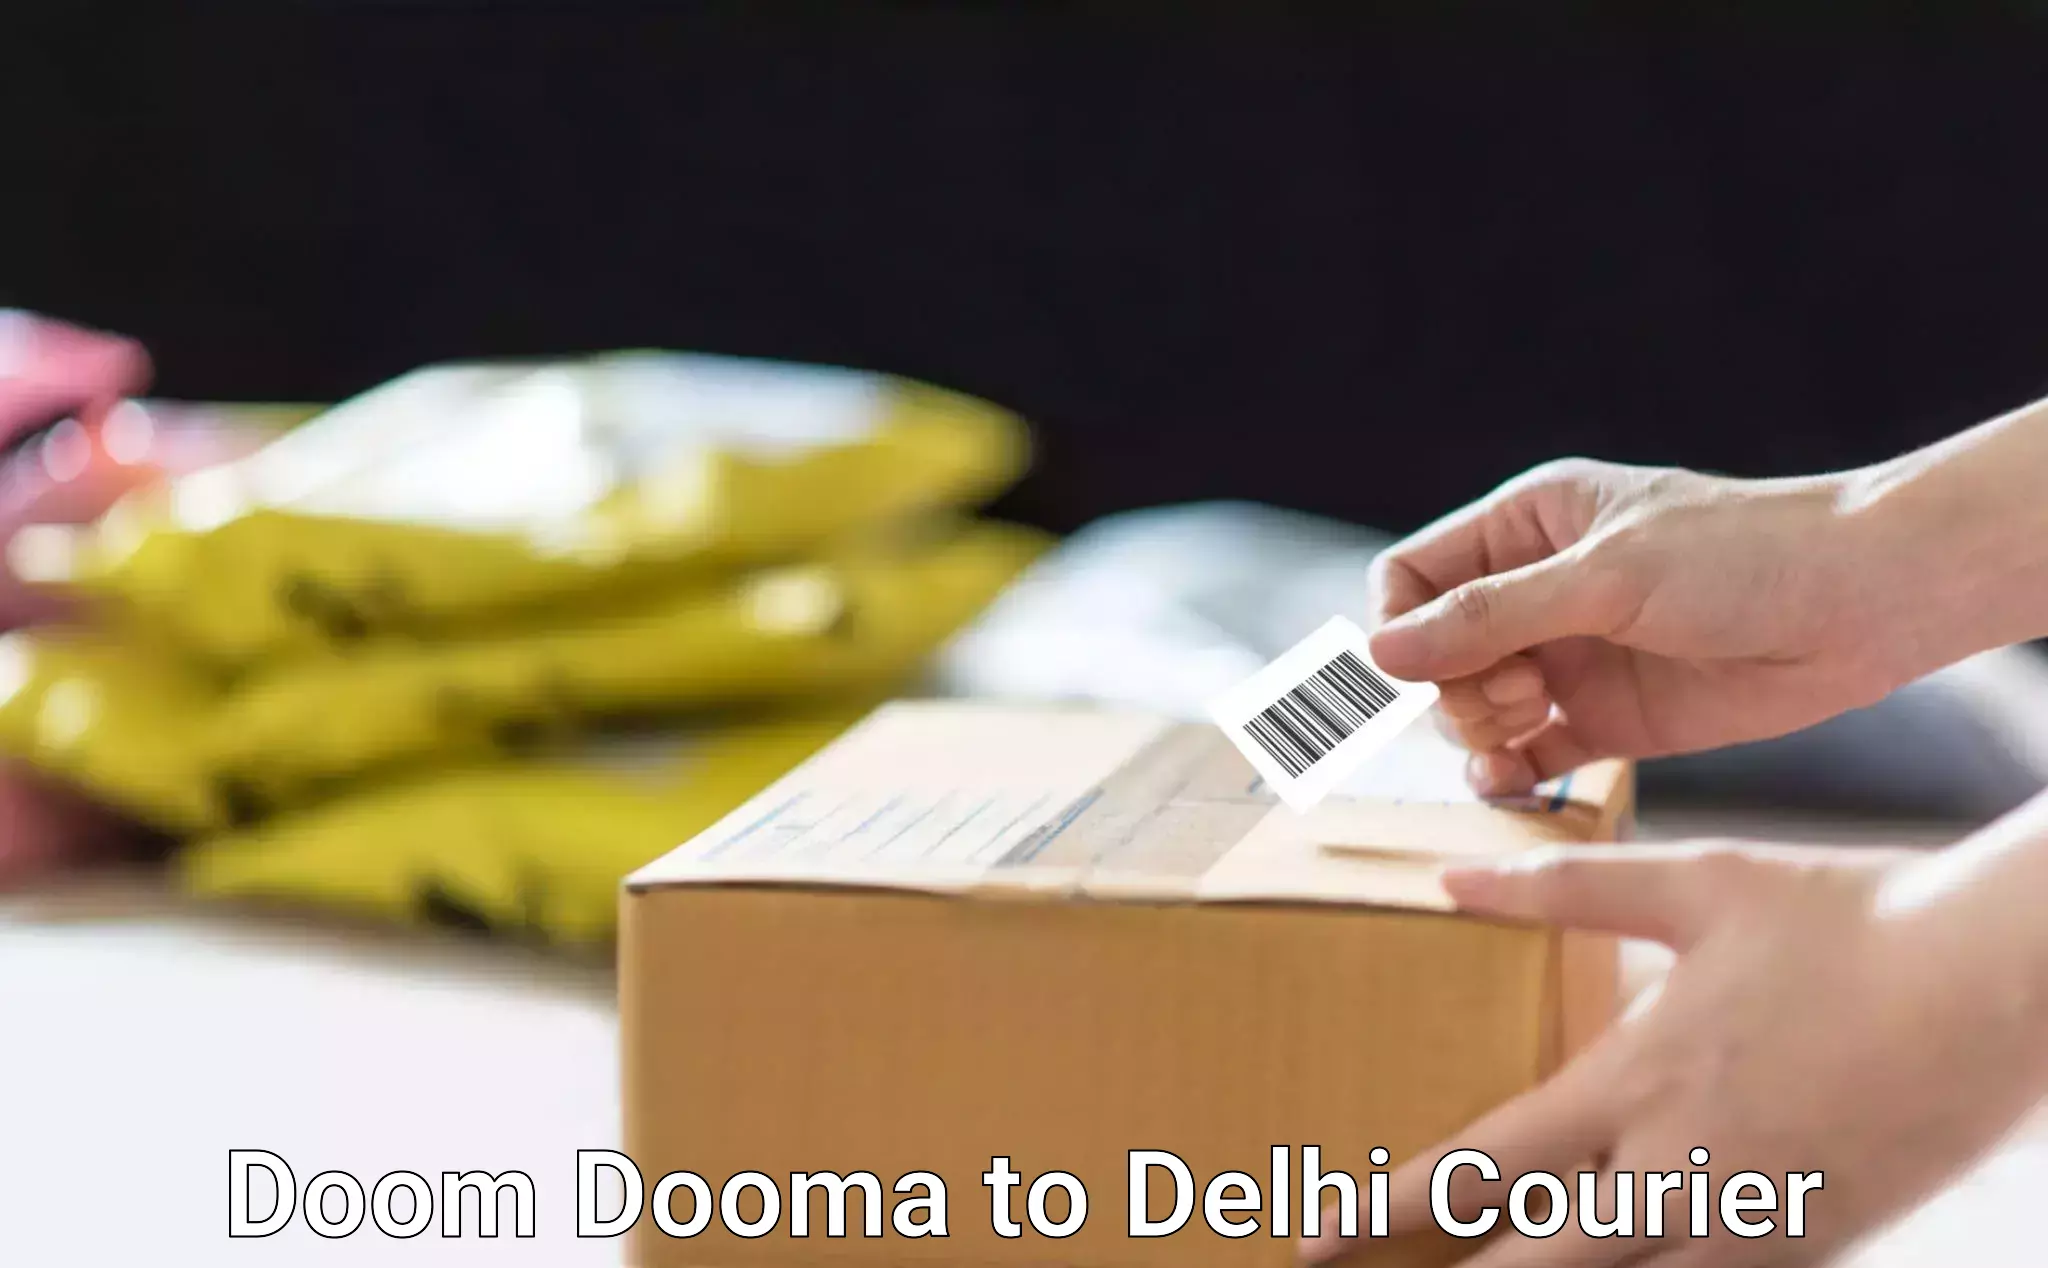 Streamlined shipping process Doom Dooma to Delhi